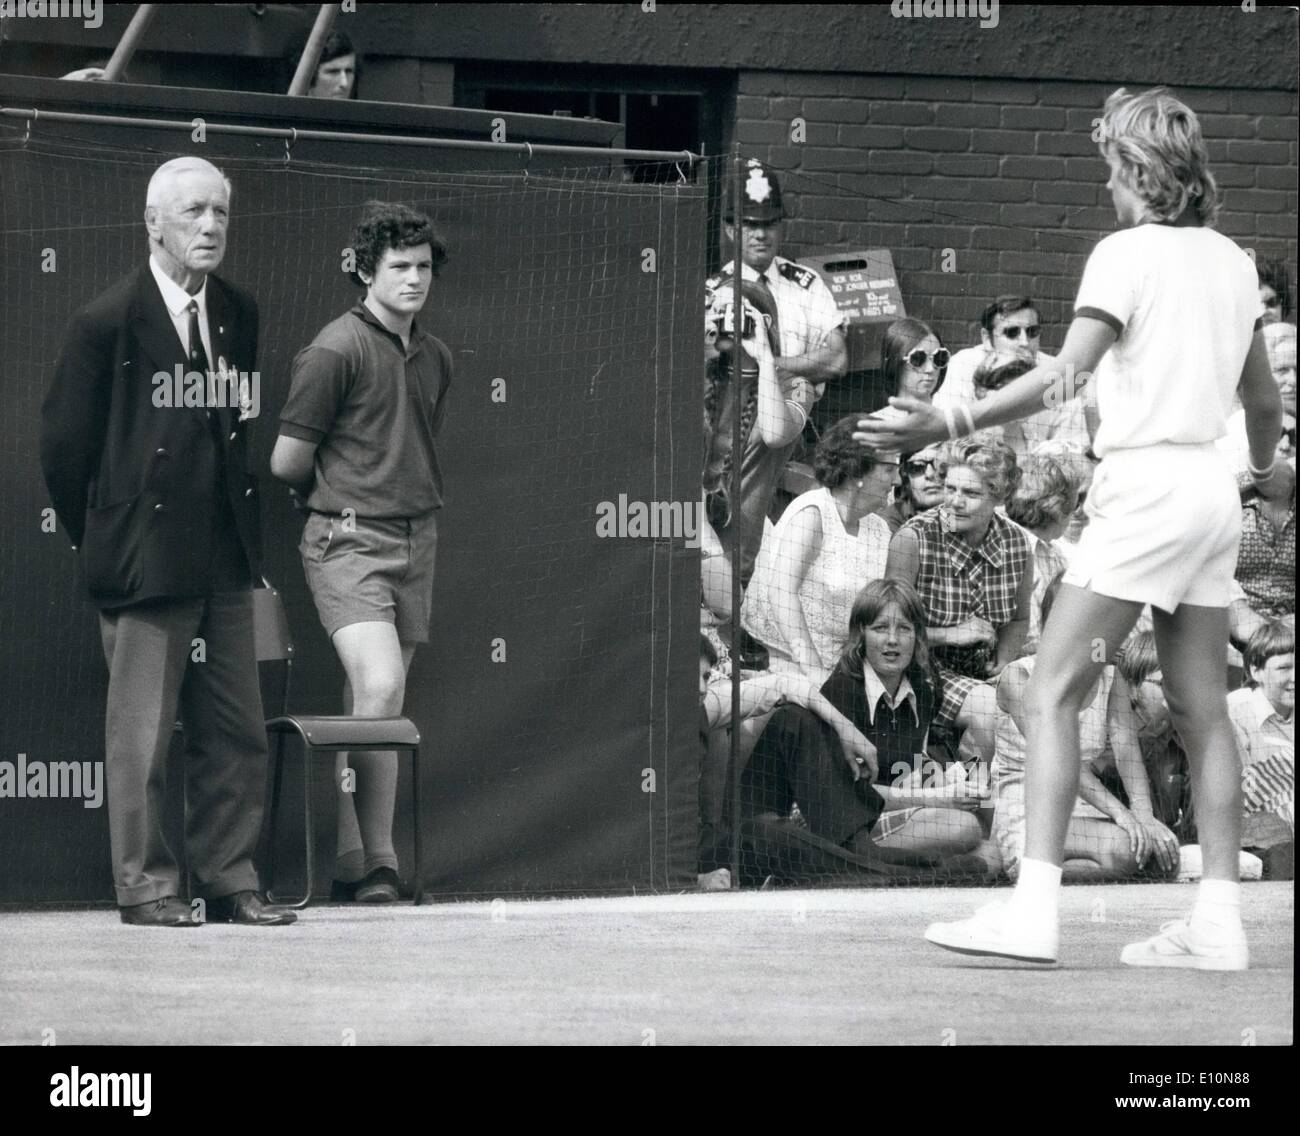 Lug. 07, 1973 - tennis a Wimbledon. Taylor batte Borg: Roger Taylor, di Gran Bretagna, ieri ha battuto il giovane giocatore svedese Foto Stock